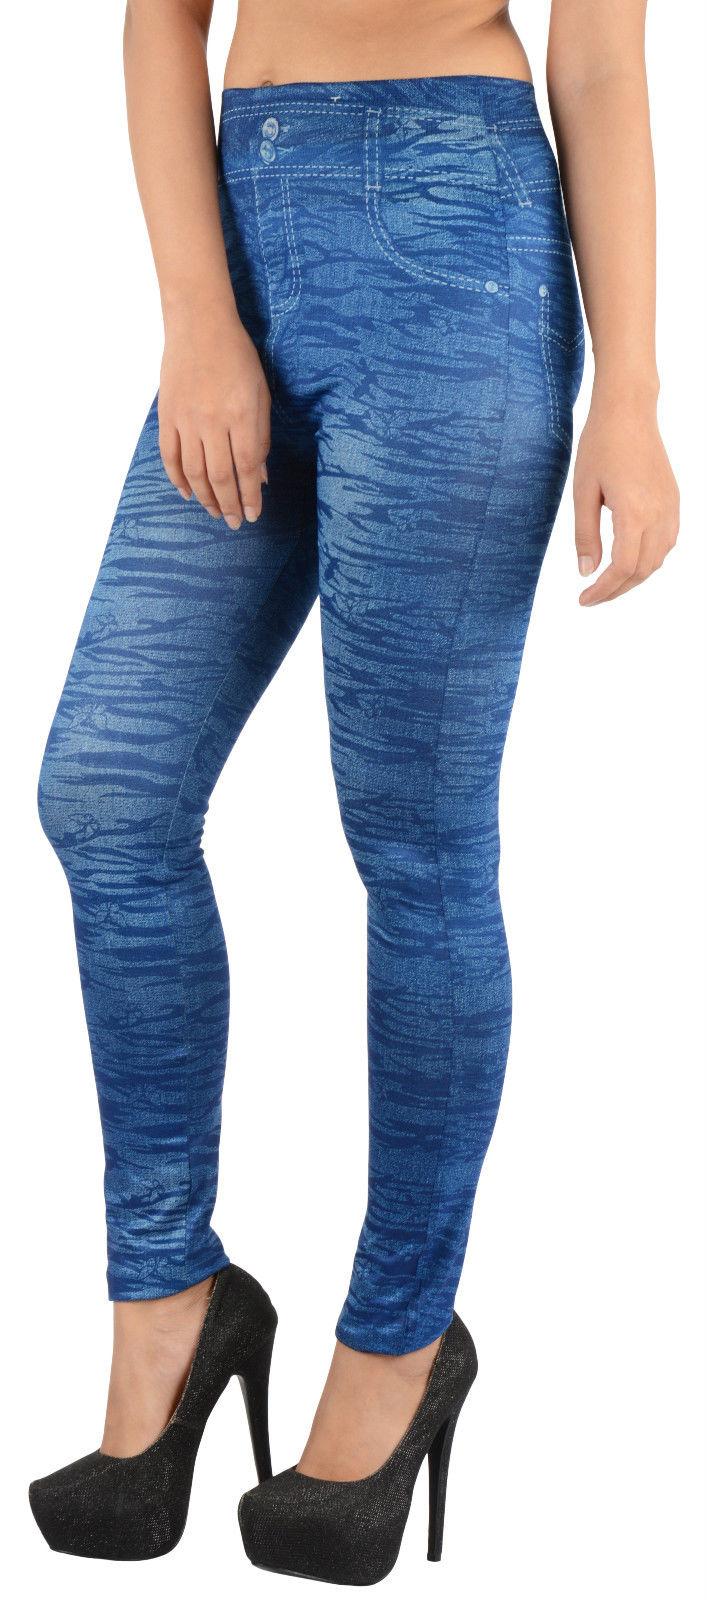 Buy Leggings That Look Like Jeans